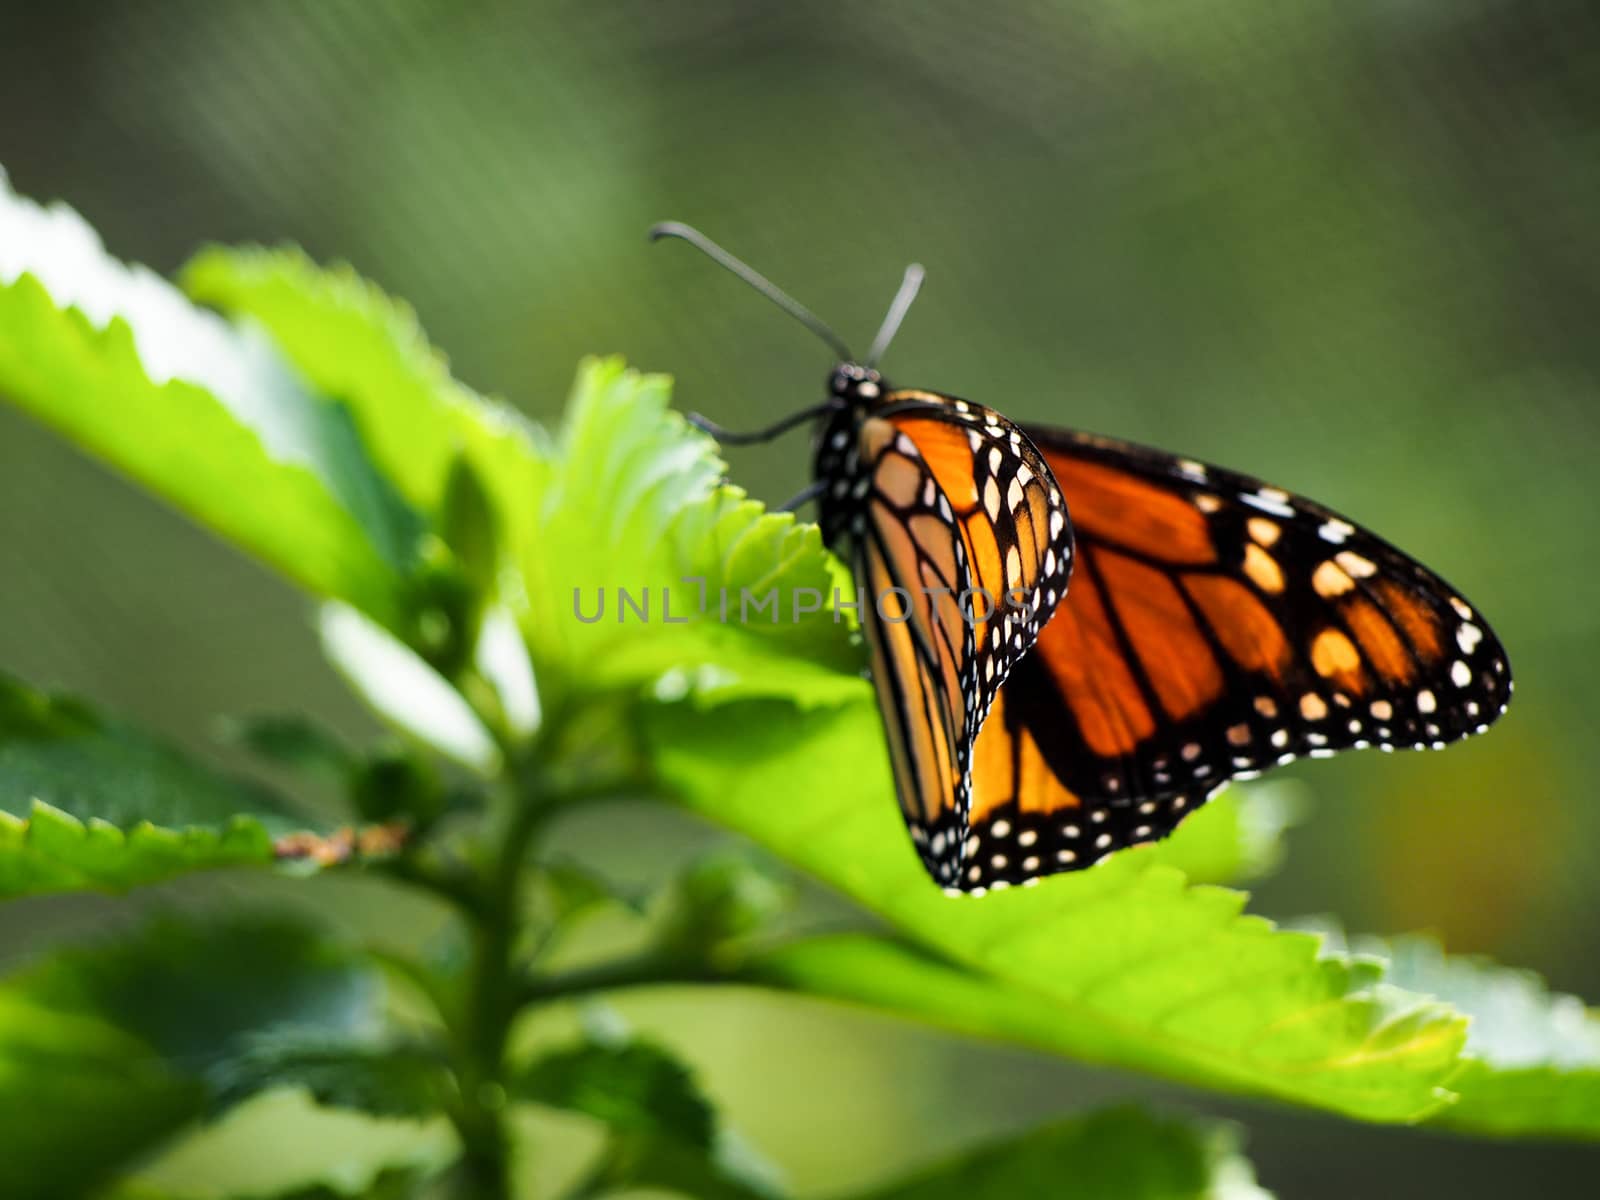 Monarch Butterfly on Leaf by NikkiGensert